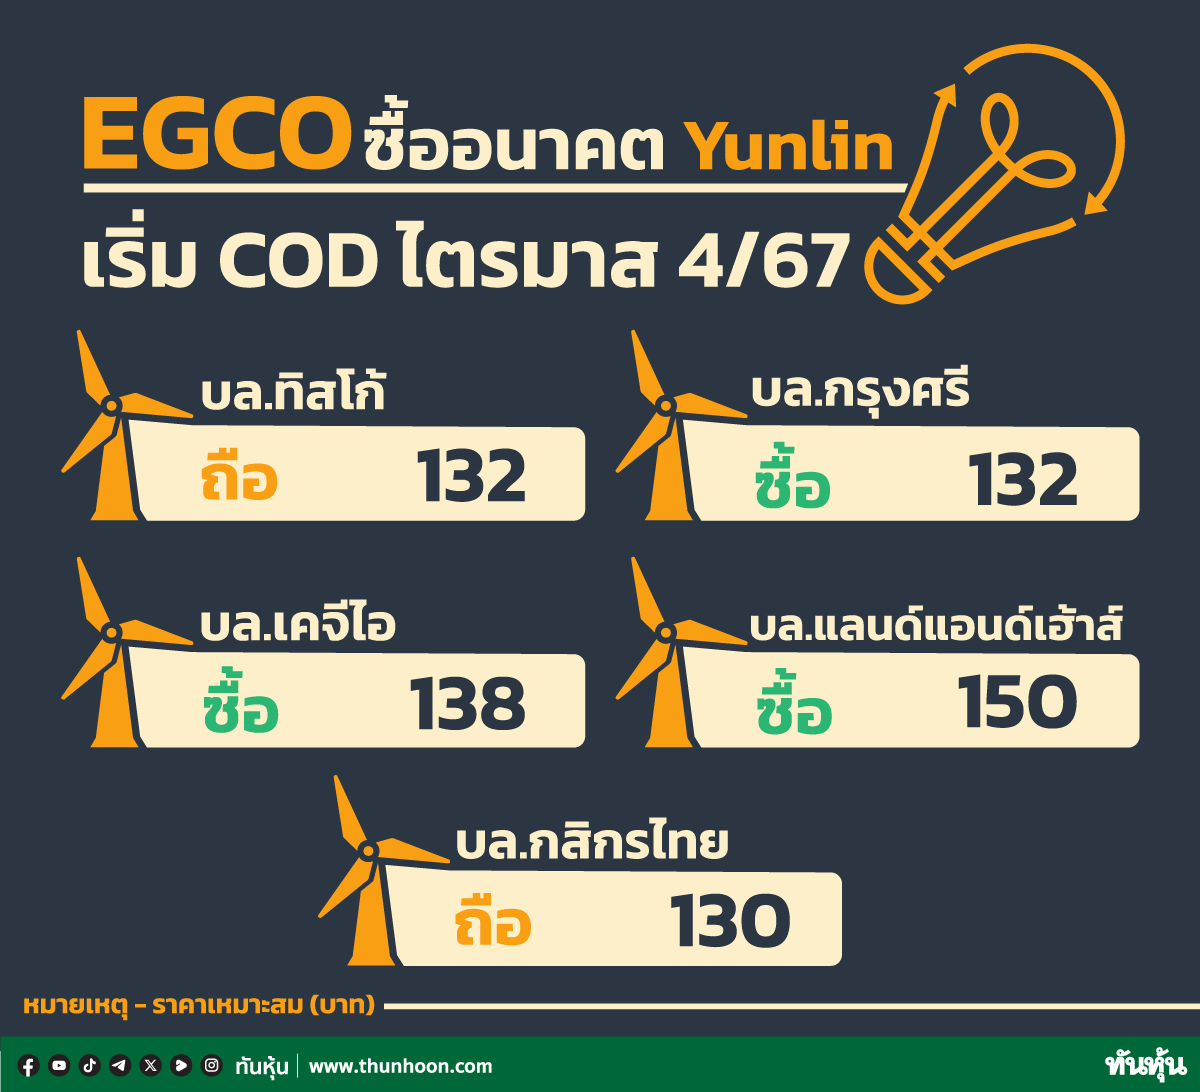 EGCO ซื้ออนาคต Yunlin เริ่ม COD ไตรมาส 4/67